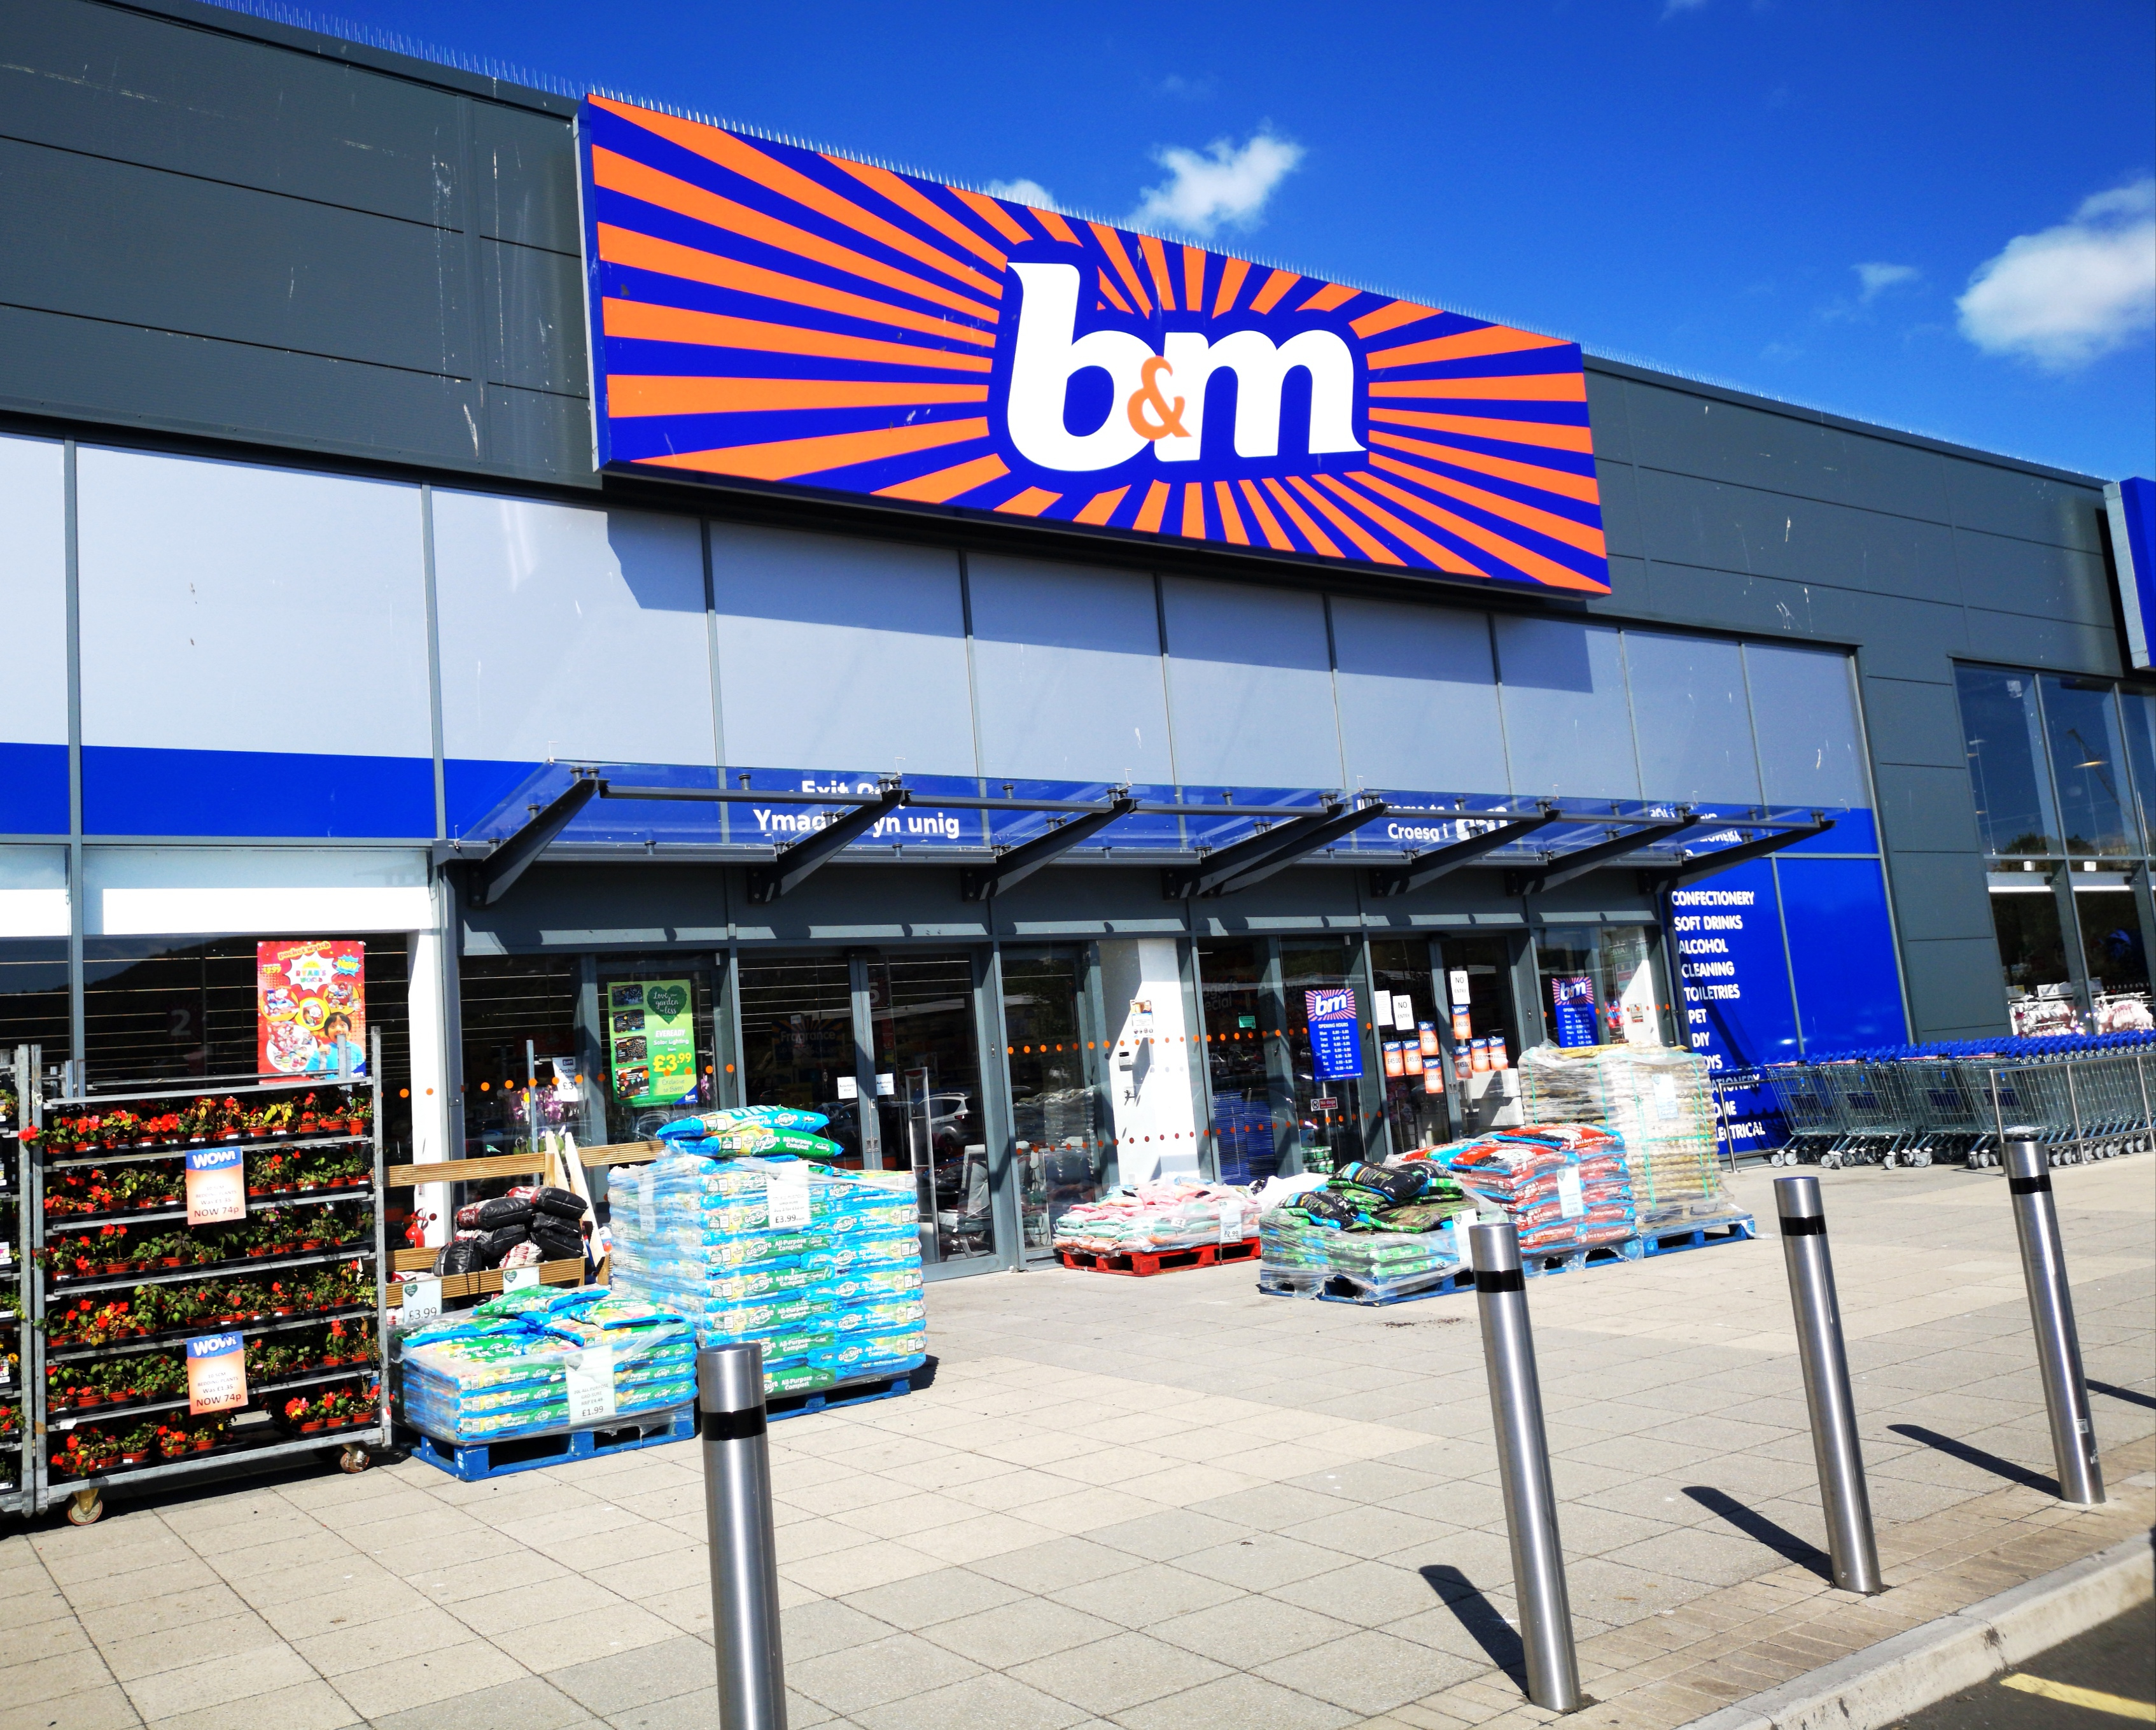 Das Unternehmen hinter B&M gab an, dass der Umsatz in den drei Monaten bis zum 24. Juni um 13,5 Prozent auf 1,3 Milliarden Pfund gestiegen sei